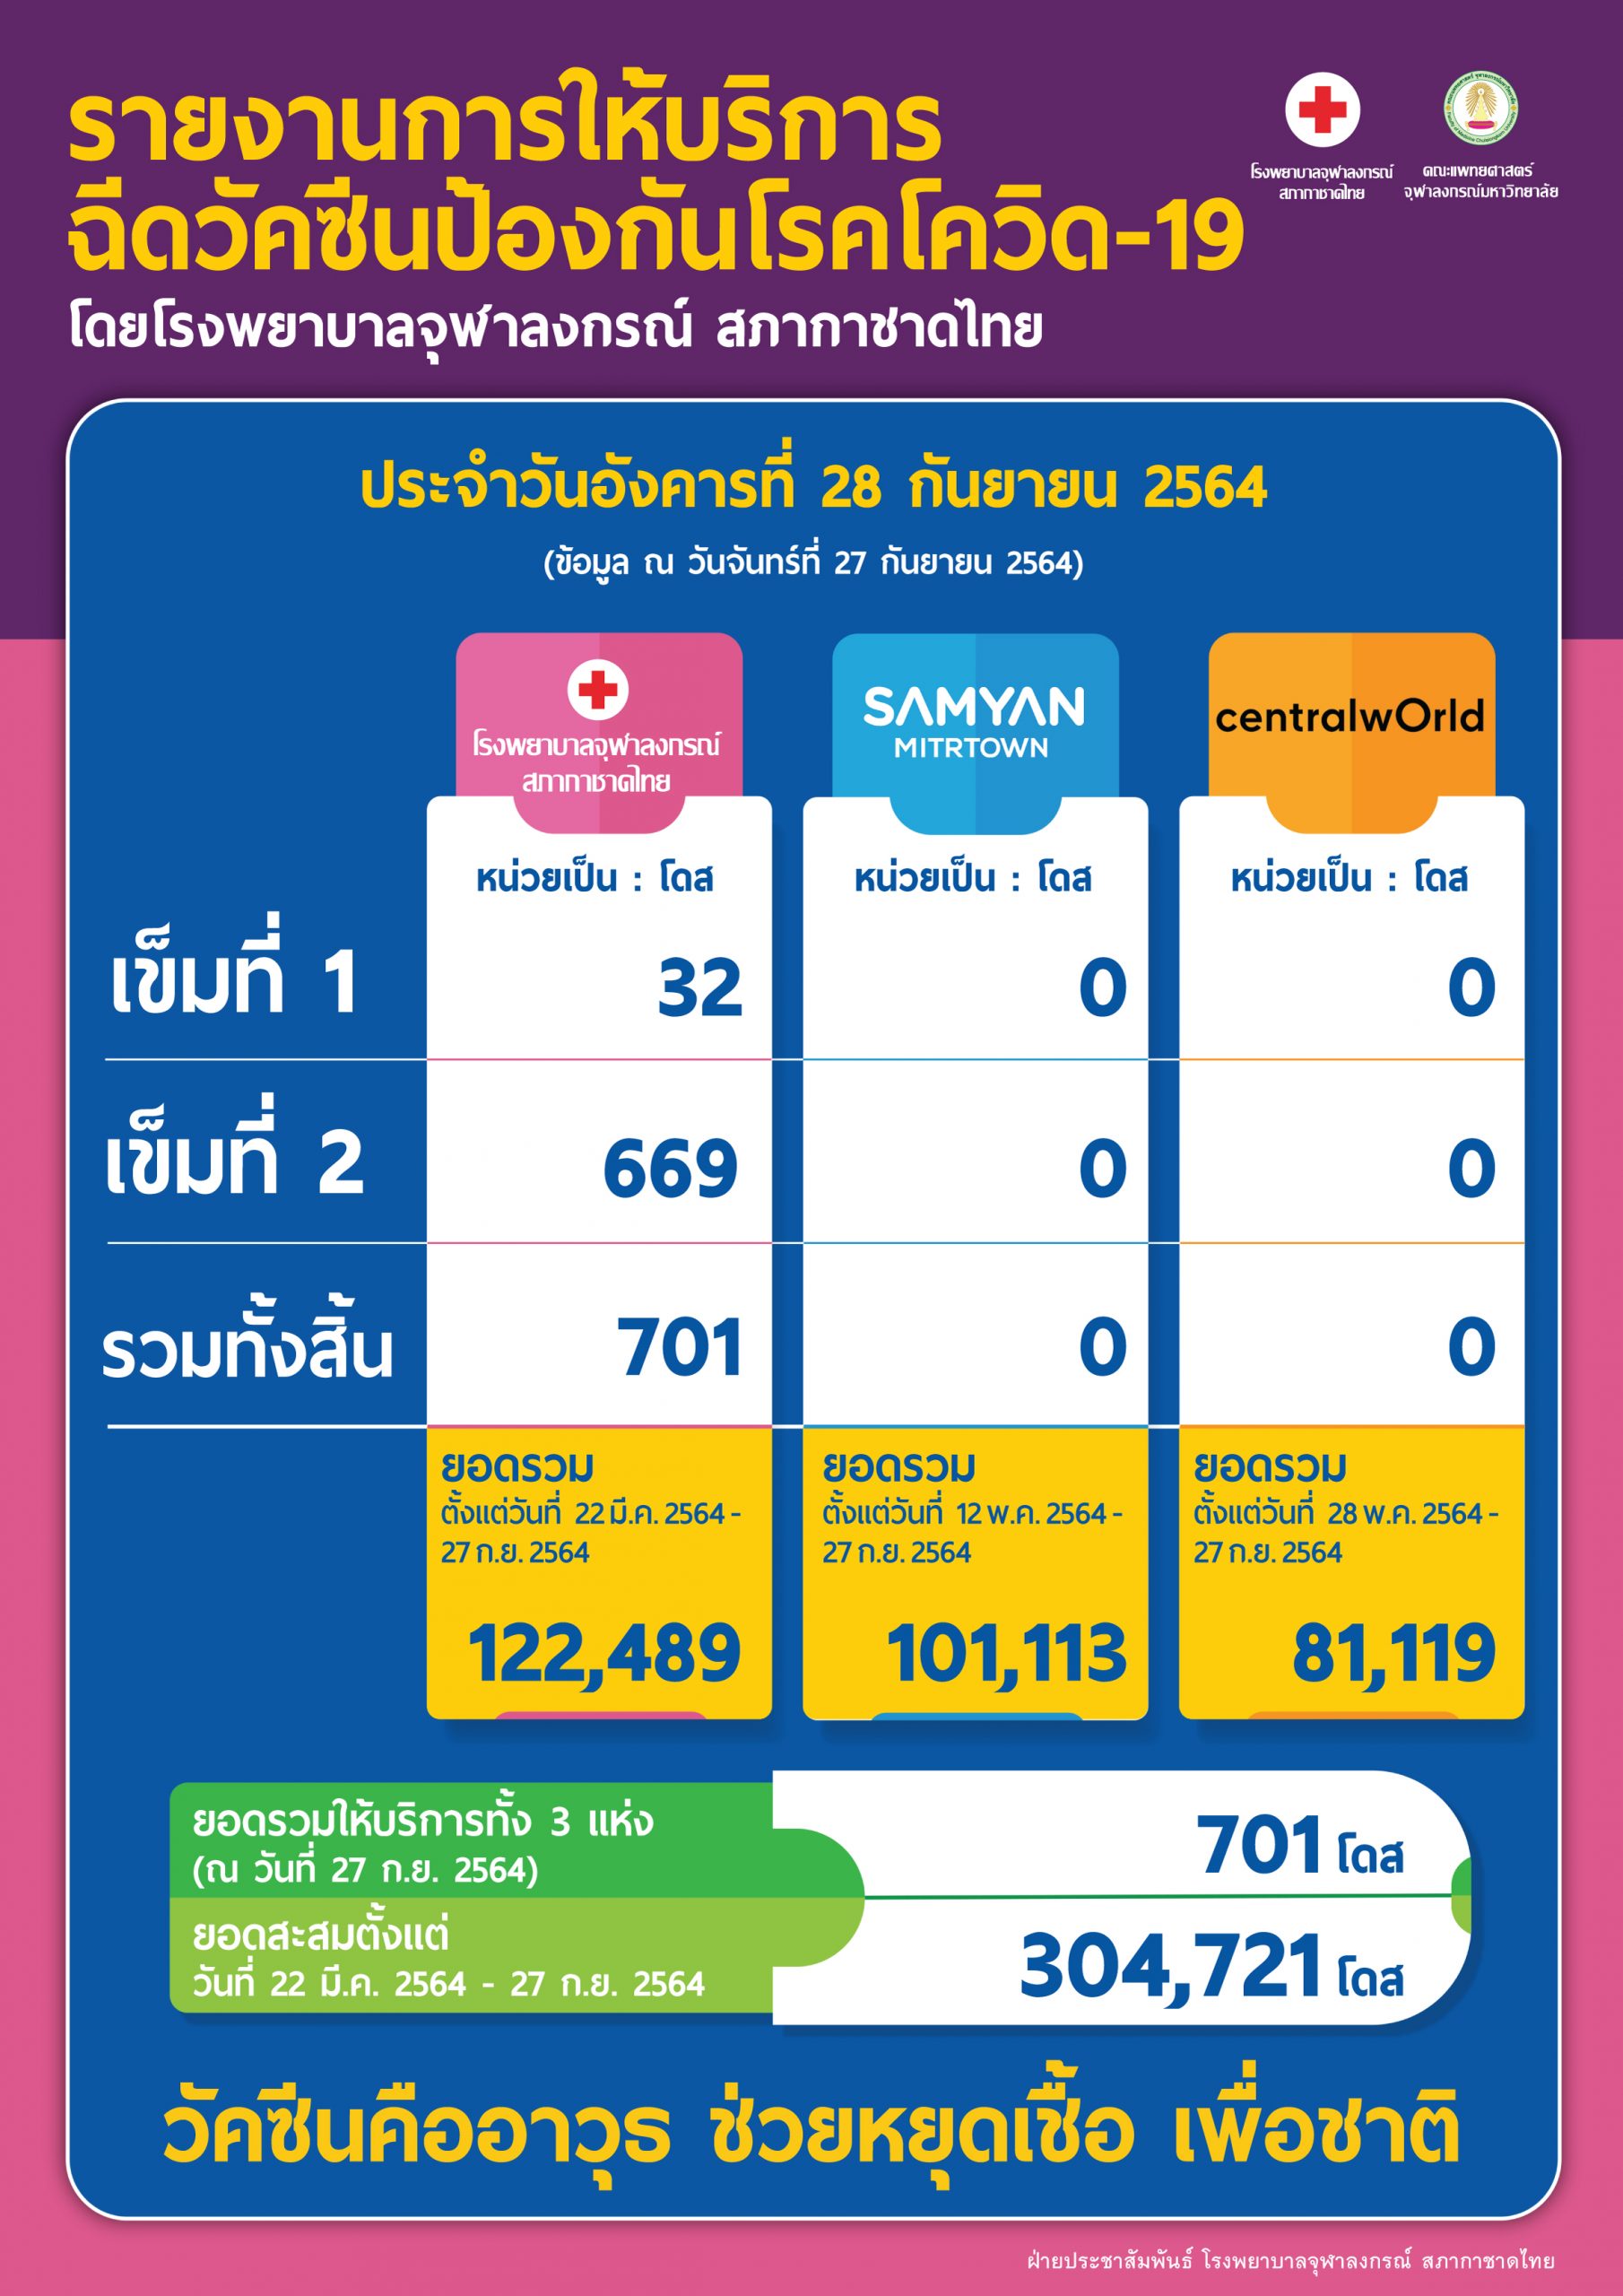 รายงานการให้บริการฉีดวัคซีนป้องกันโรคโควิด-19 โดยโรงพยาบาลจุฬาลงกรณ์ สภากาชาดไทย ประจำวันอังคารที่ 28 กันยายน 2564